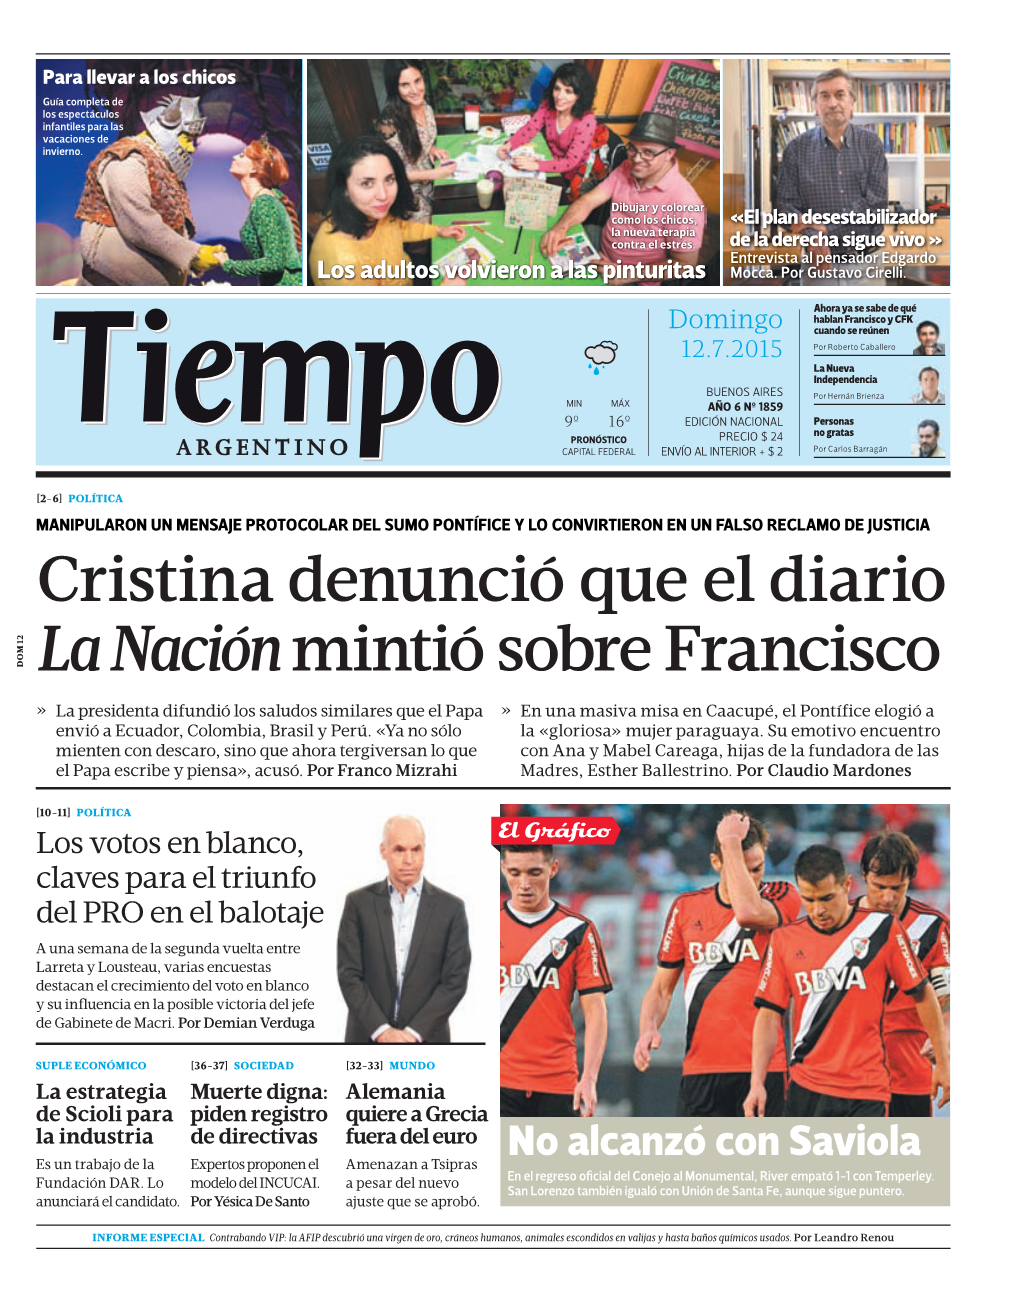 Cristina Denunció Que El Diario La Naciónmintió Sobre Francisco